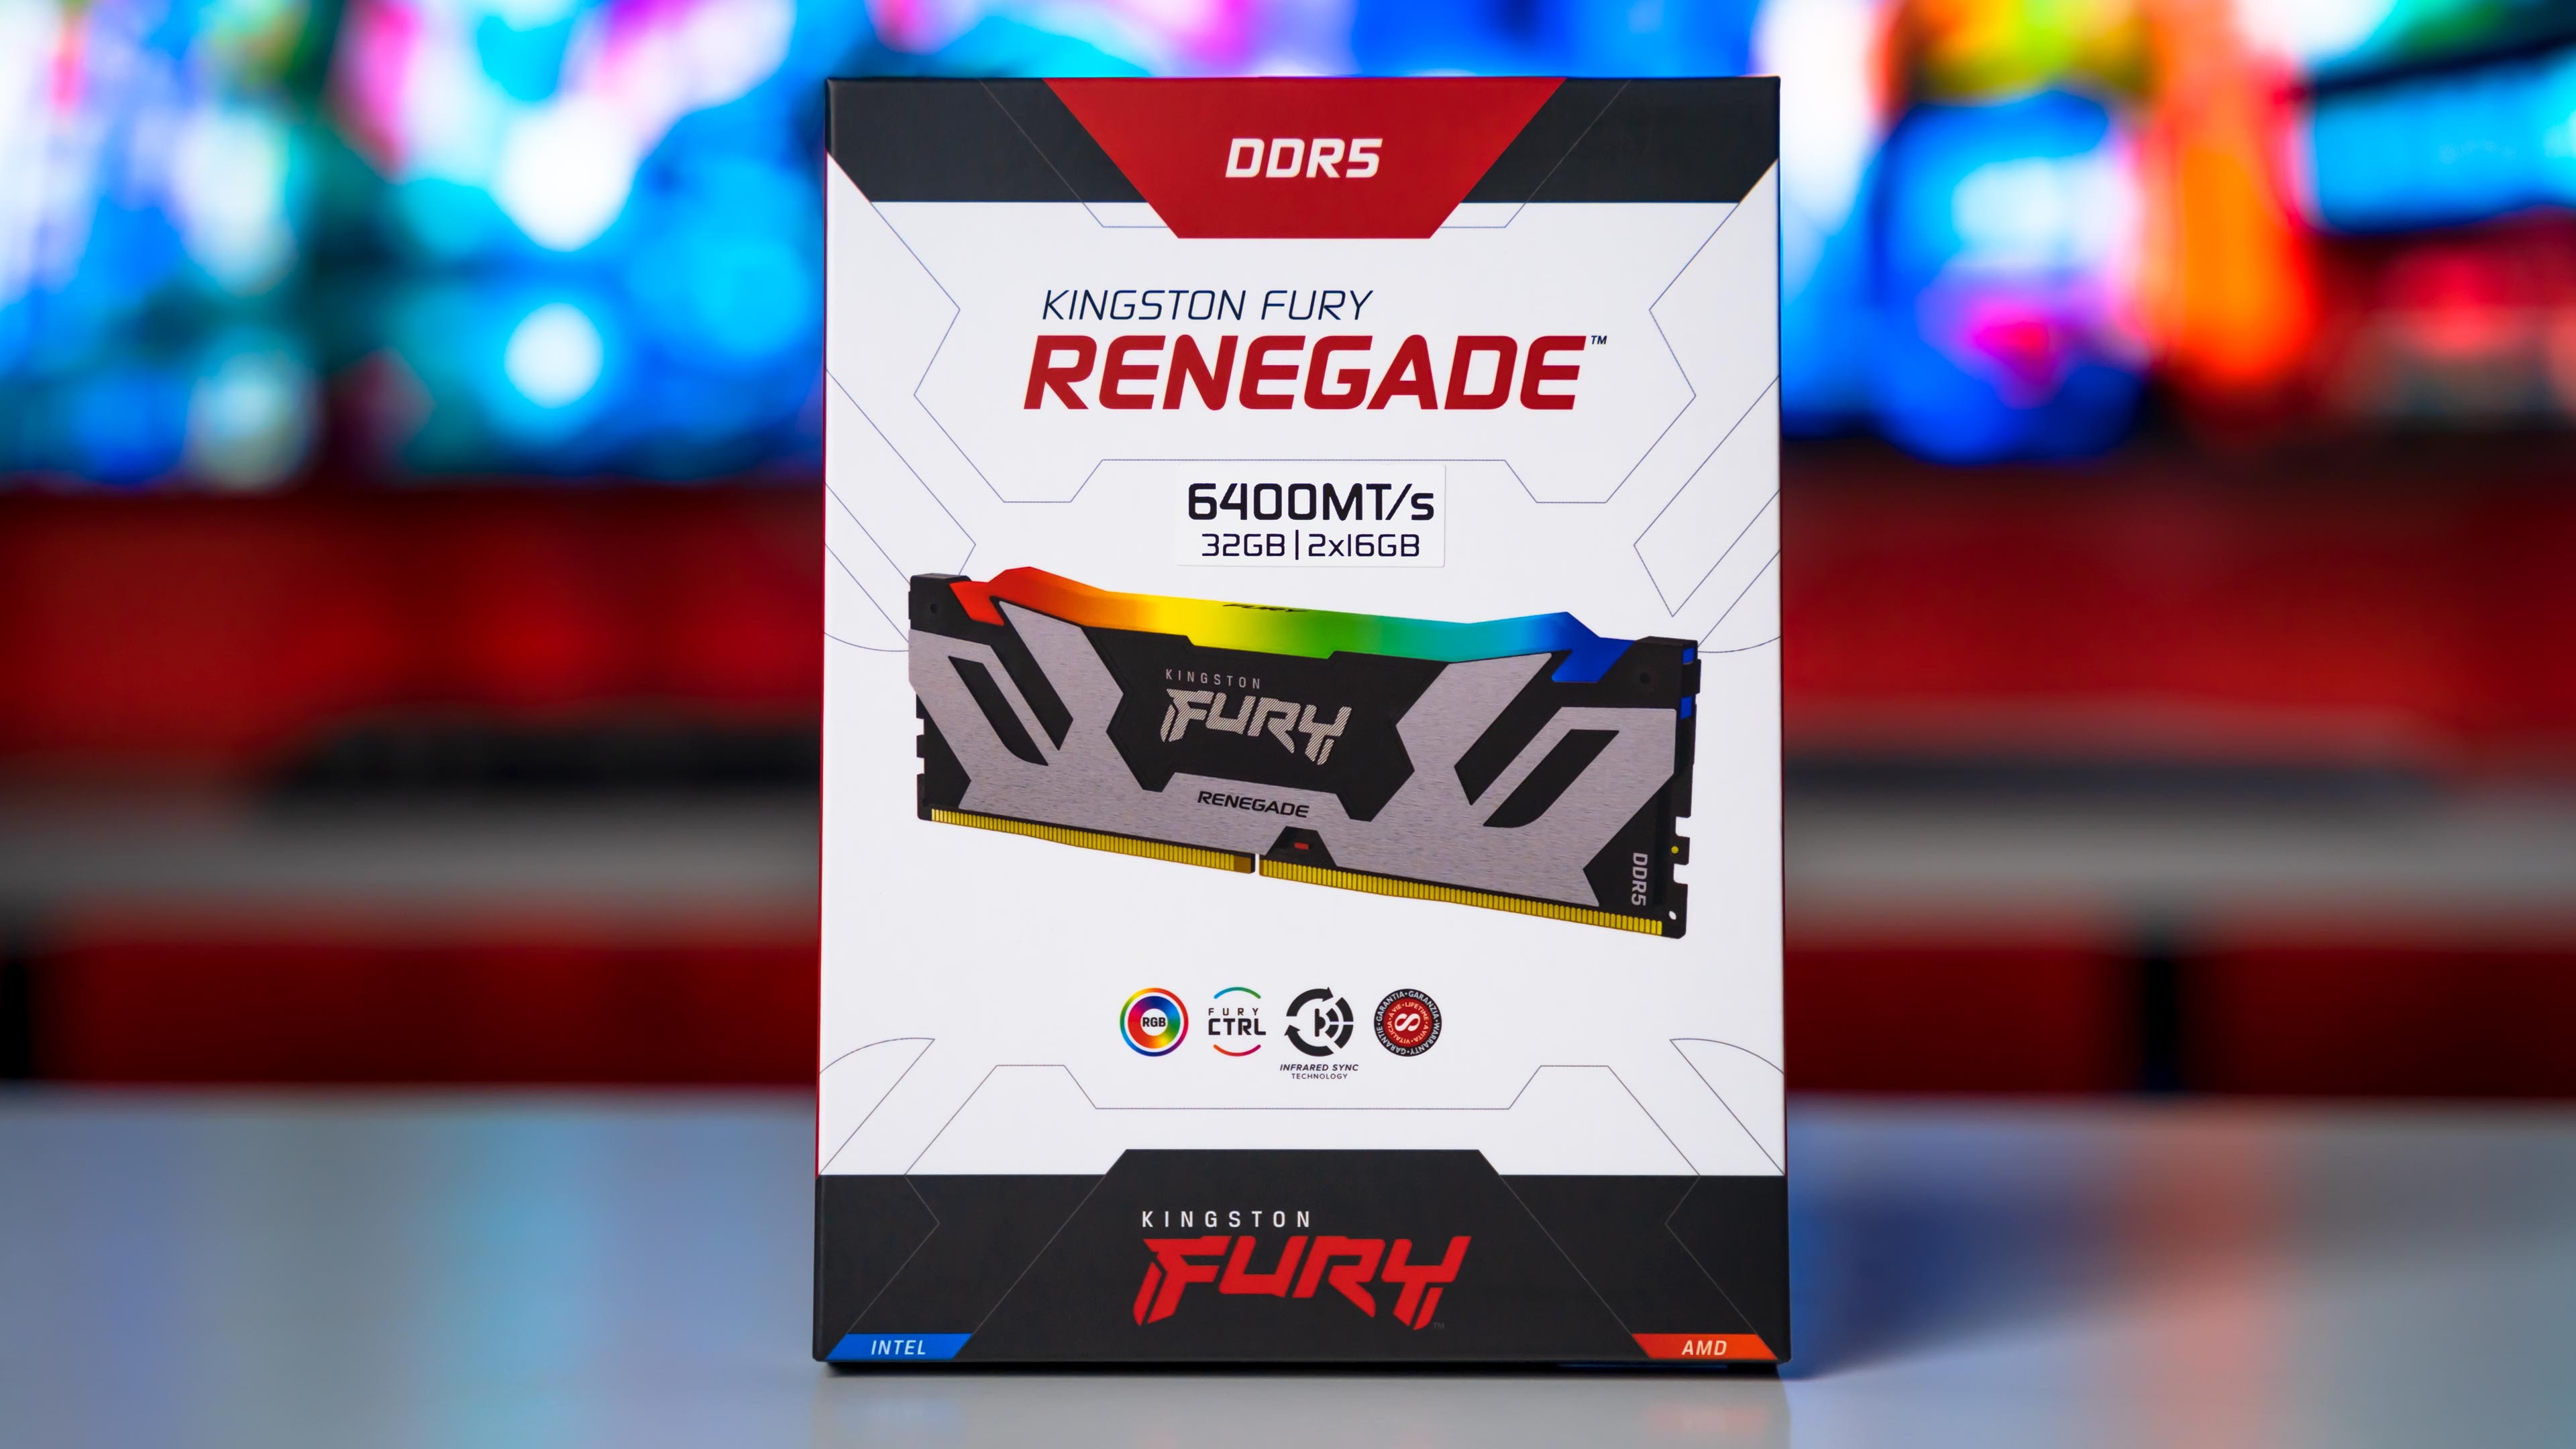 Kingston Fury Renegade RGB DDR5 6400Mhz 32GB Dual Kit Box (1)